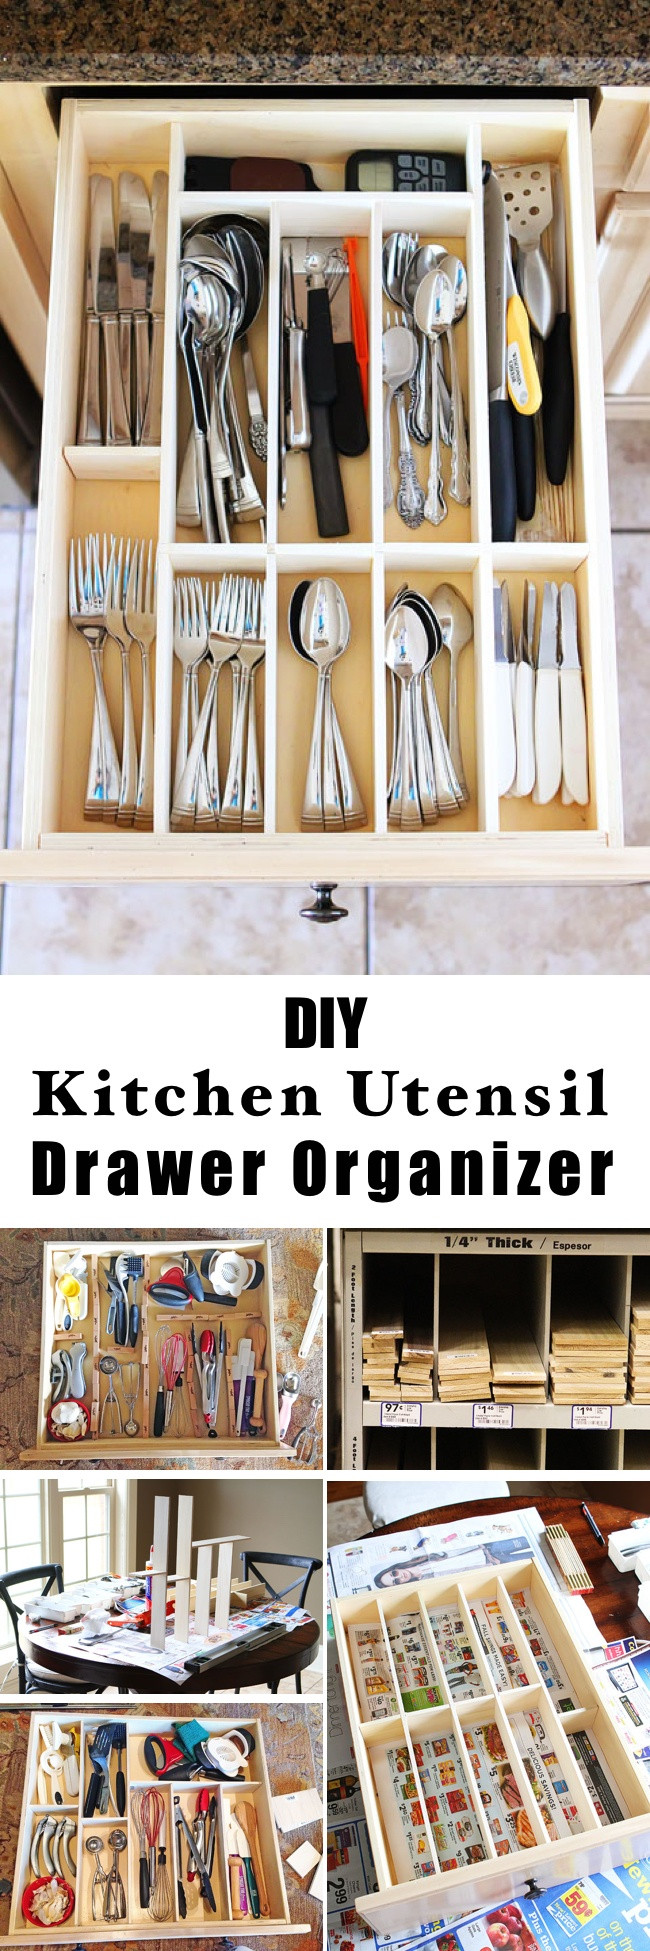 DIY Kitchen Organizer Ideas
 15 Innovative DIY Kitchen Organization & Storage Ideas